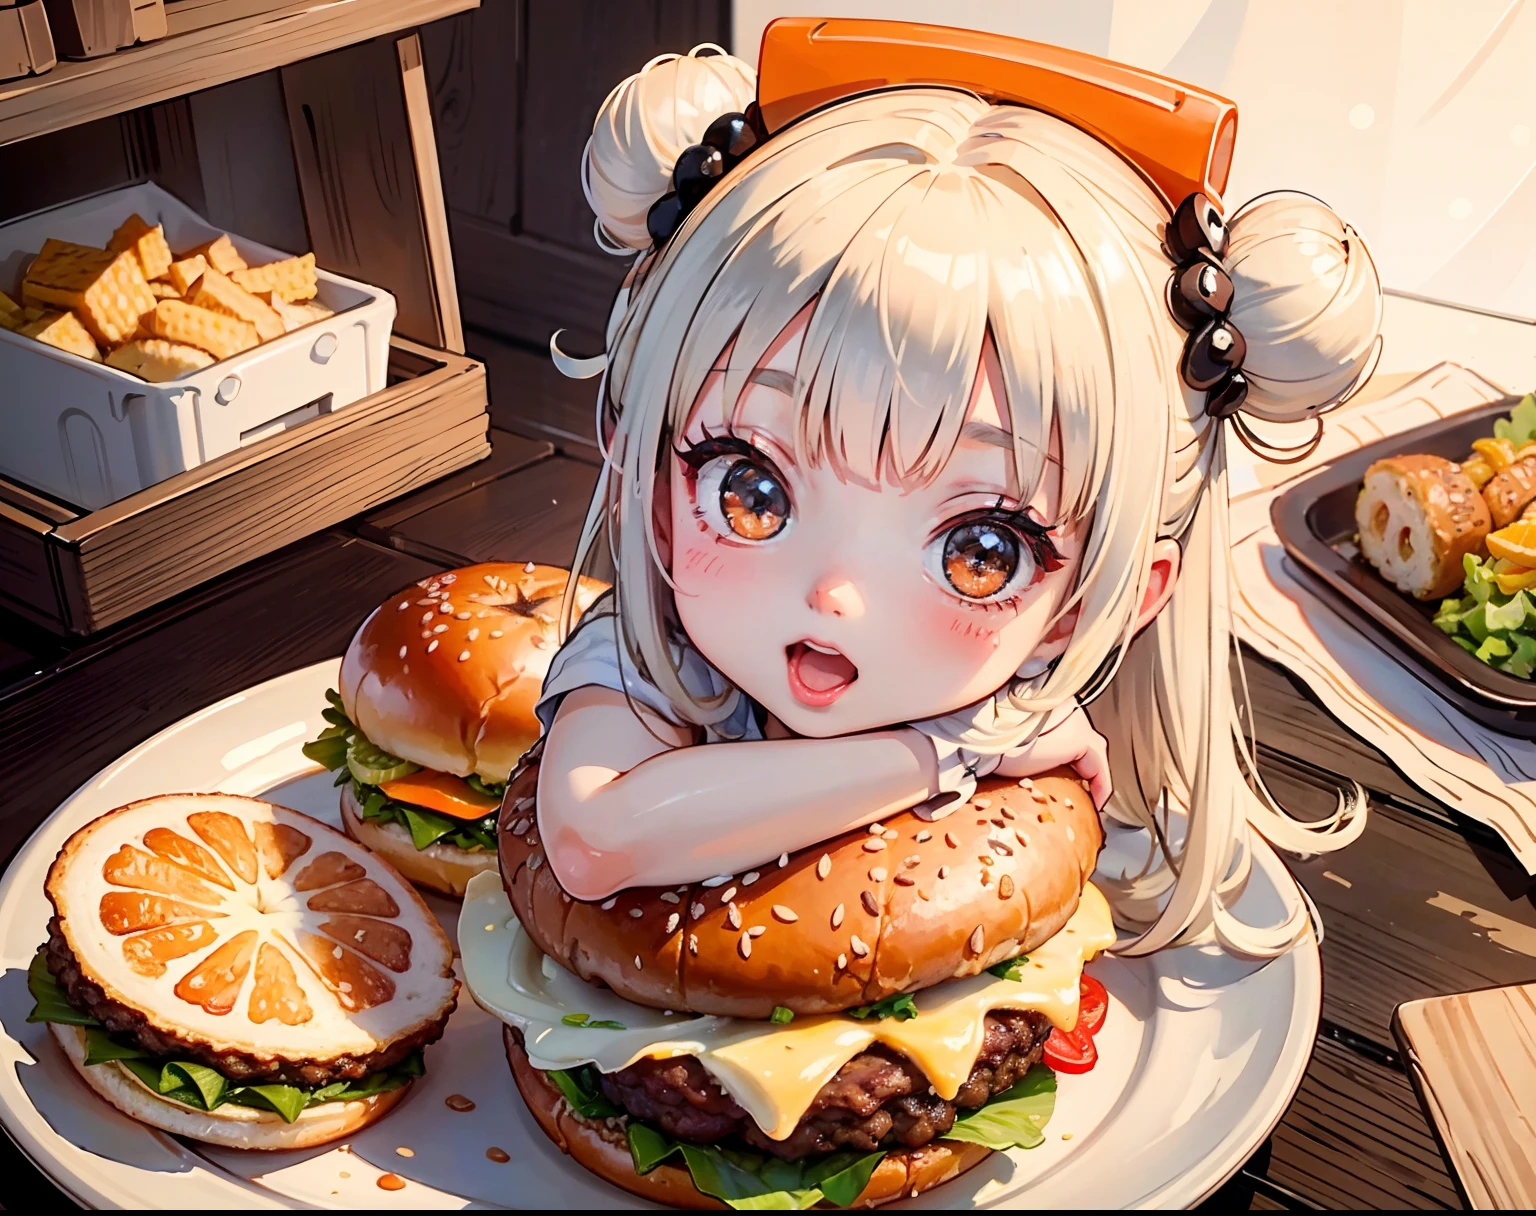 An ultra-realistic and mouthwatering hamburger шедевр, с маленькой анимированной девочкой, расположенной внутри булочки, Демонстрация сочных текстур бургера, мягкий оранжевый свет, шедевр, высокое качество, KFC, v I 50